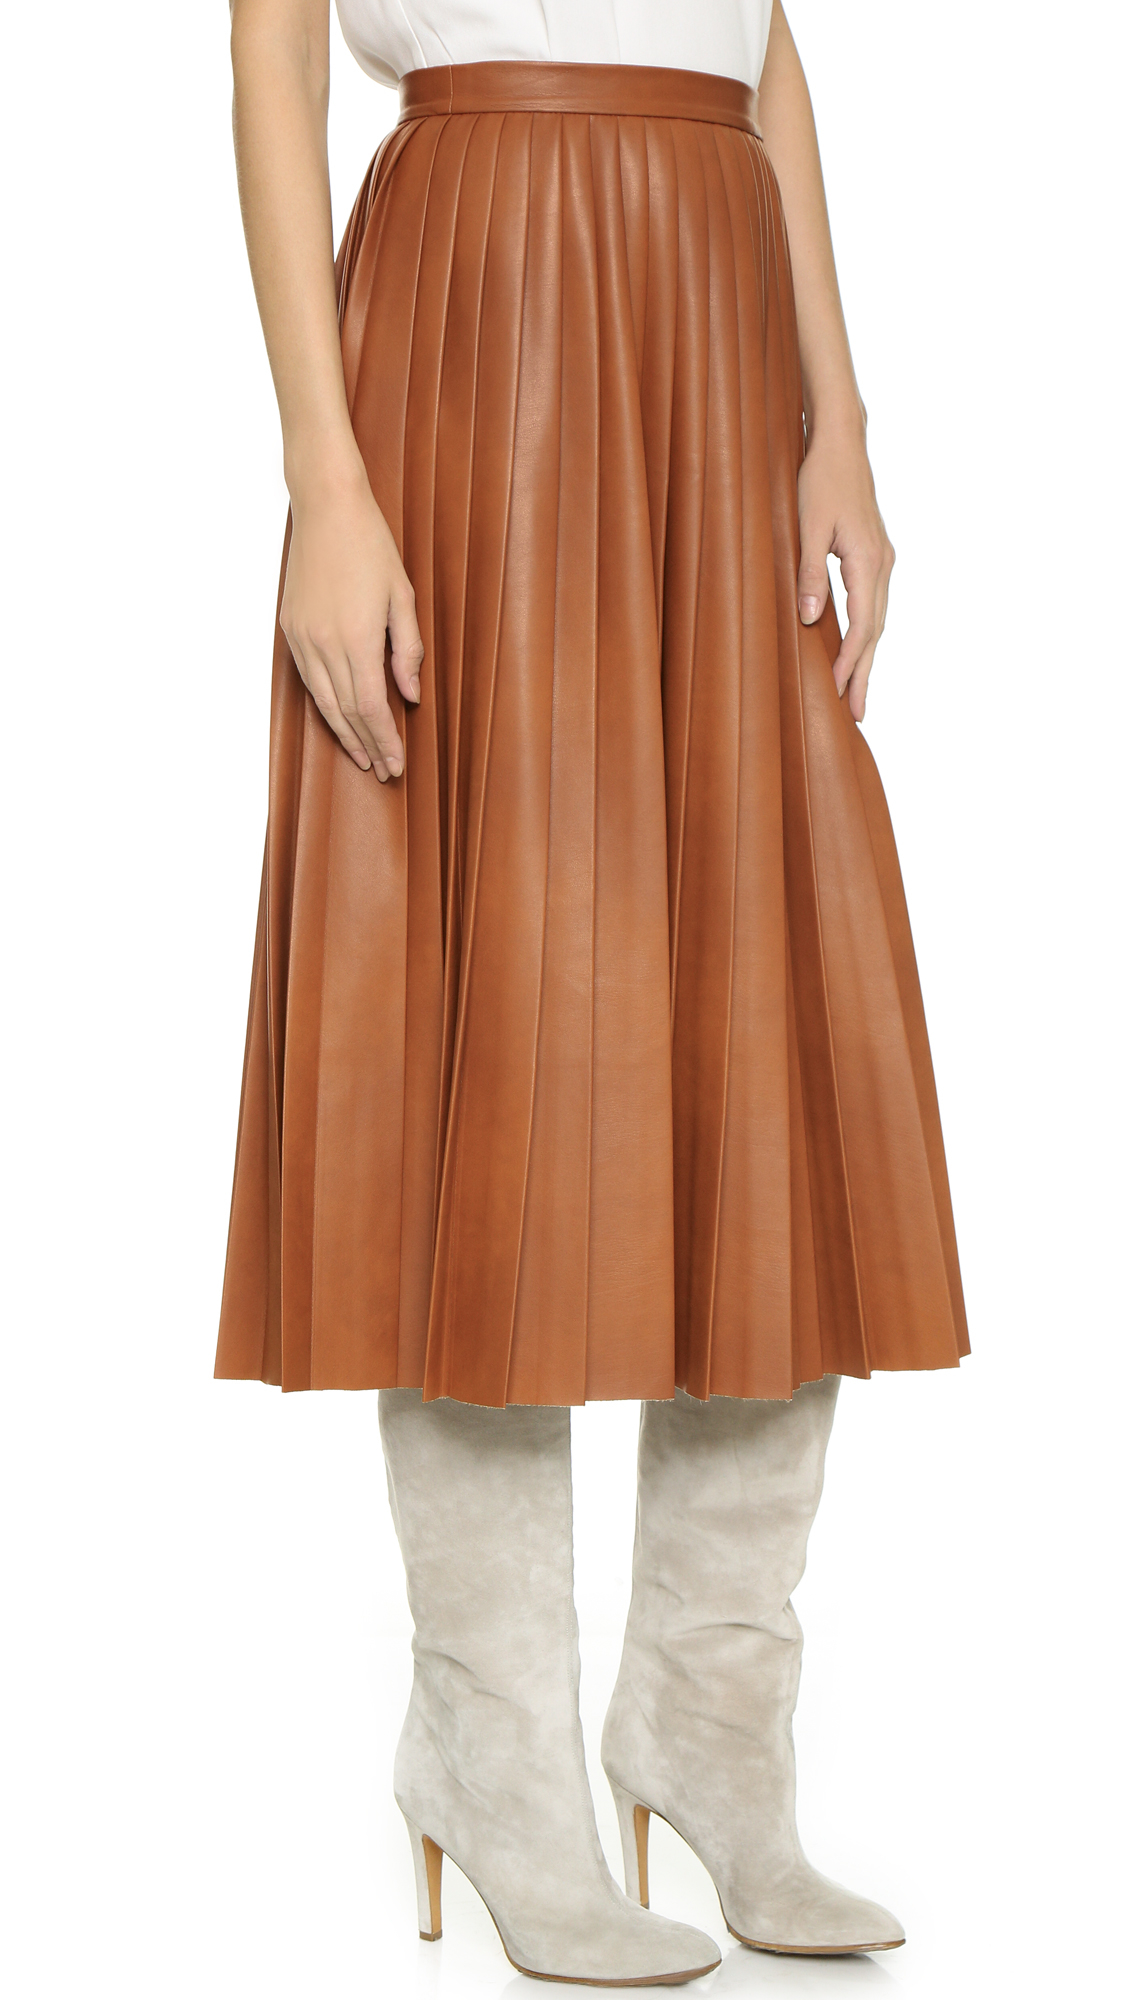 Lyst - By Malene Birger Asla Pleated Skirt - Cognac in Brown